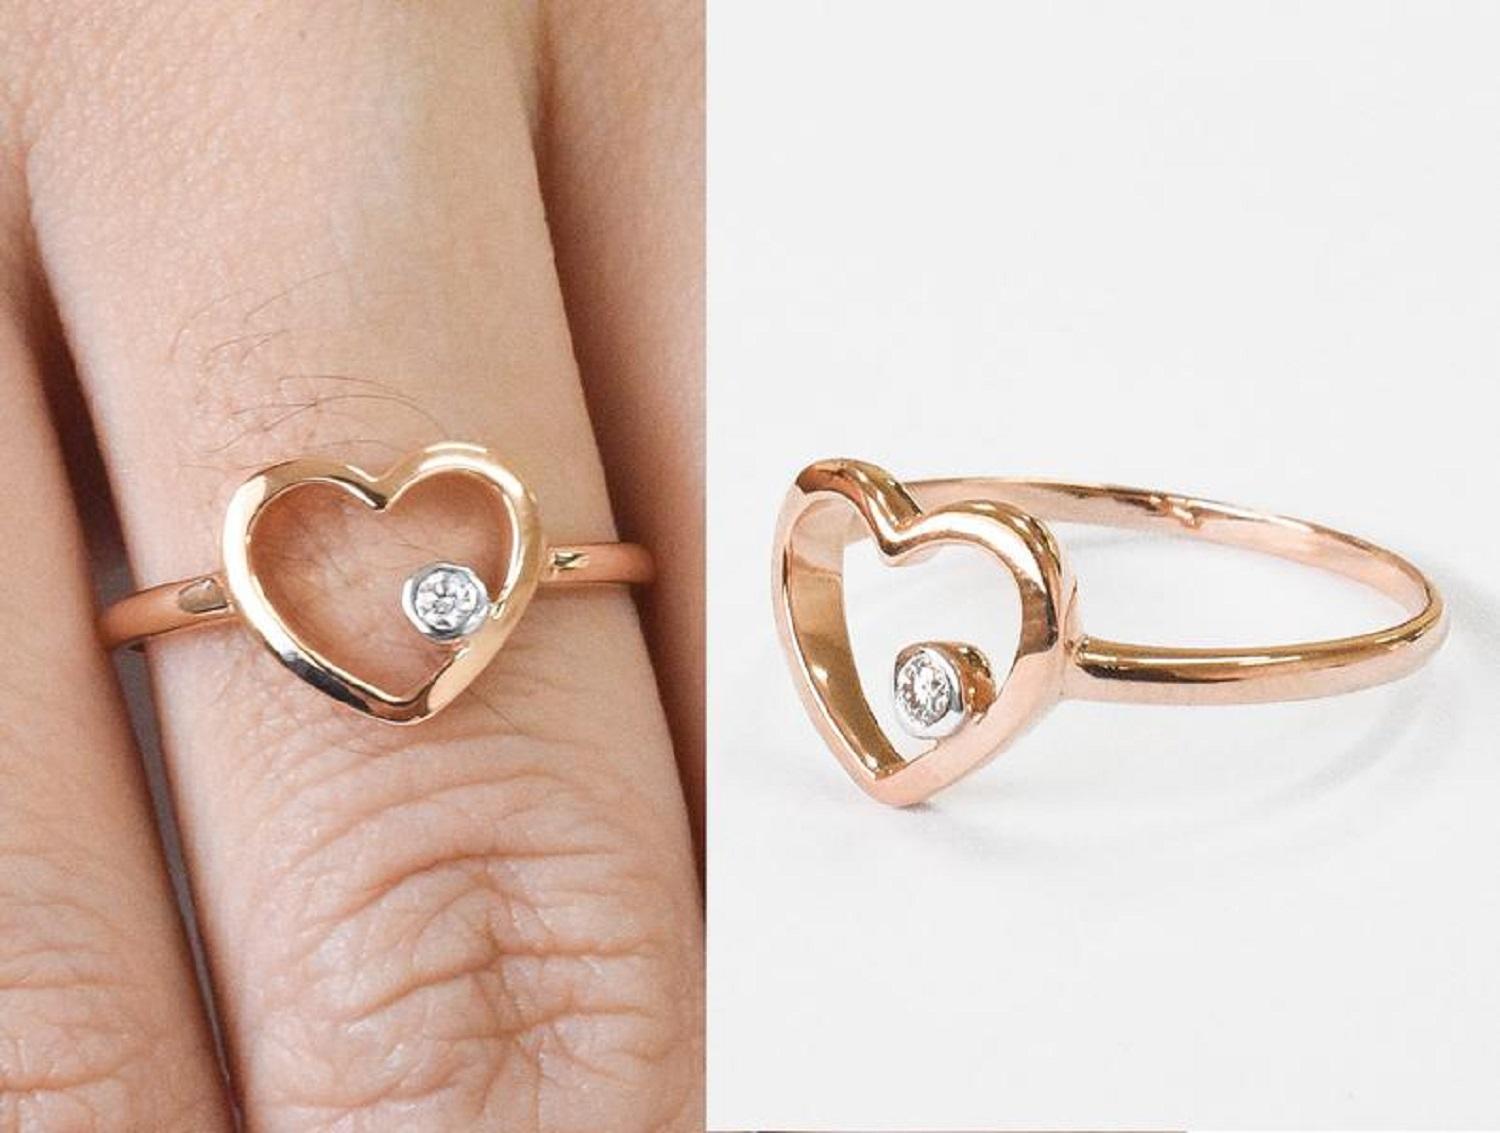 For Sale:  14k Rose Gold Diamond Heart Ring Minimal Heart Ring with Bezel Set Diamond 12